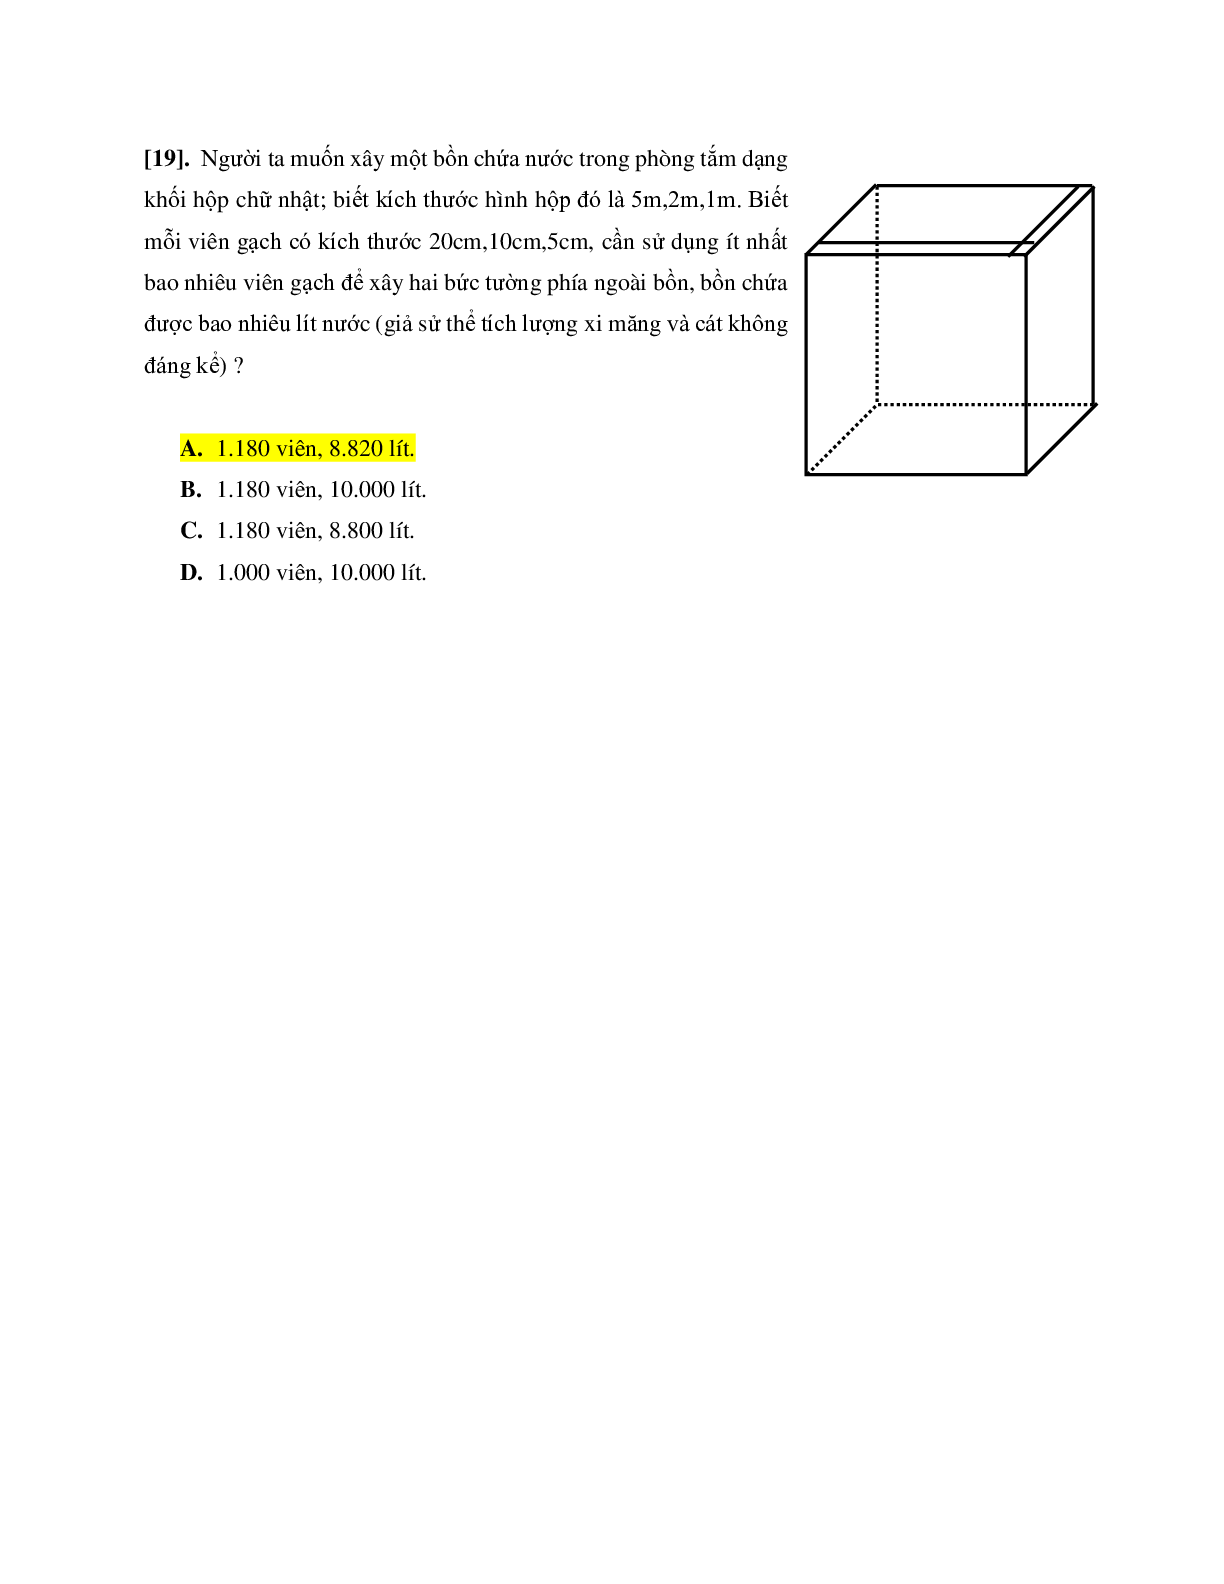 Toán ứng dụng lớp 12 (trang 8)